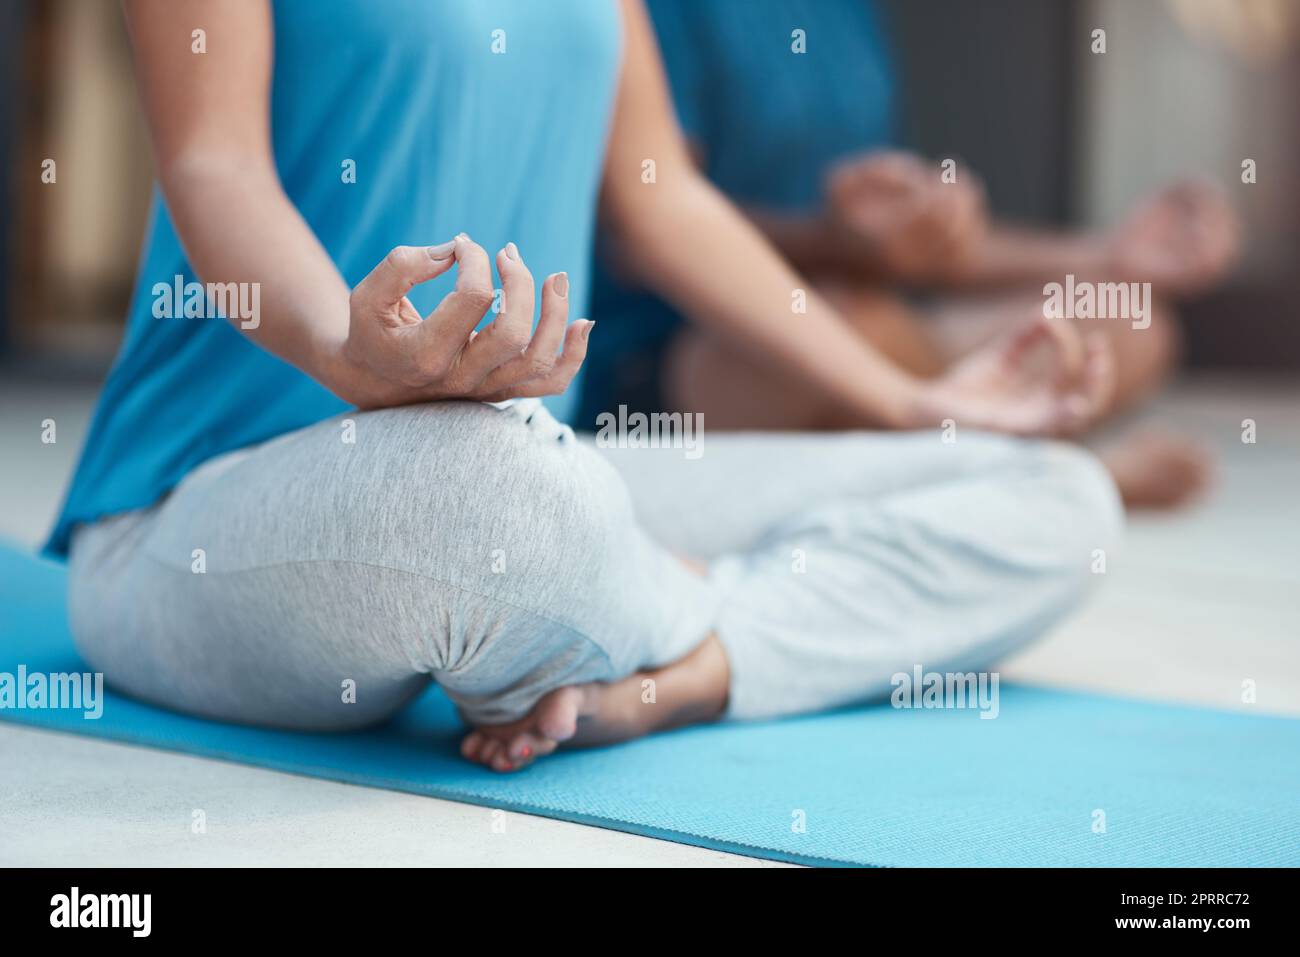 La forme est toujours la clé en matière de yoga. une femme méconnaissable s'engageant dans une posture de yoga assise avec ses jambes croisées Banque D'Images